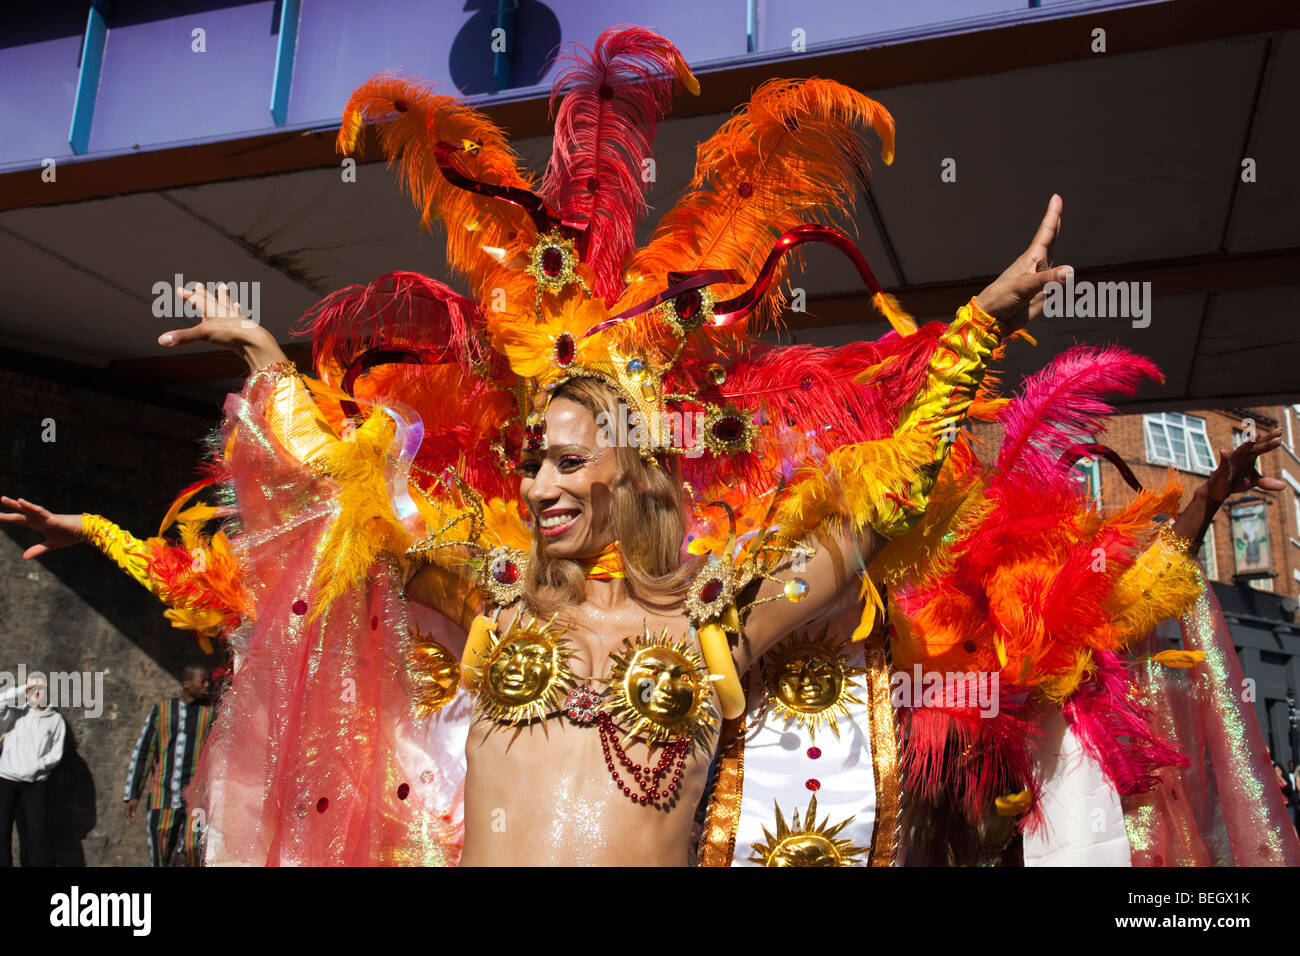 Paraiso School of Samba at Hackney Carnival celebrations and parade in London. Stock Photo